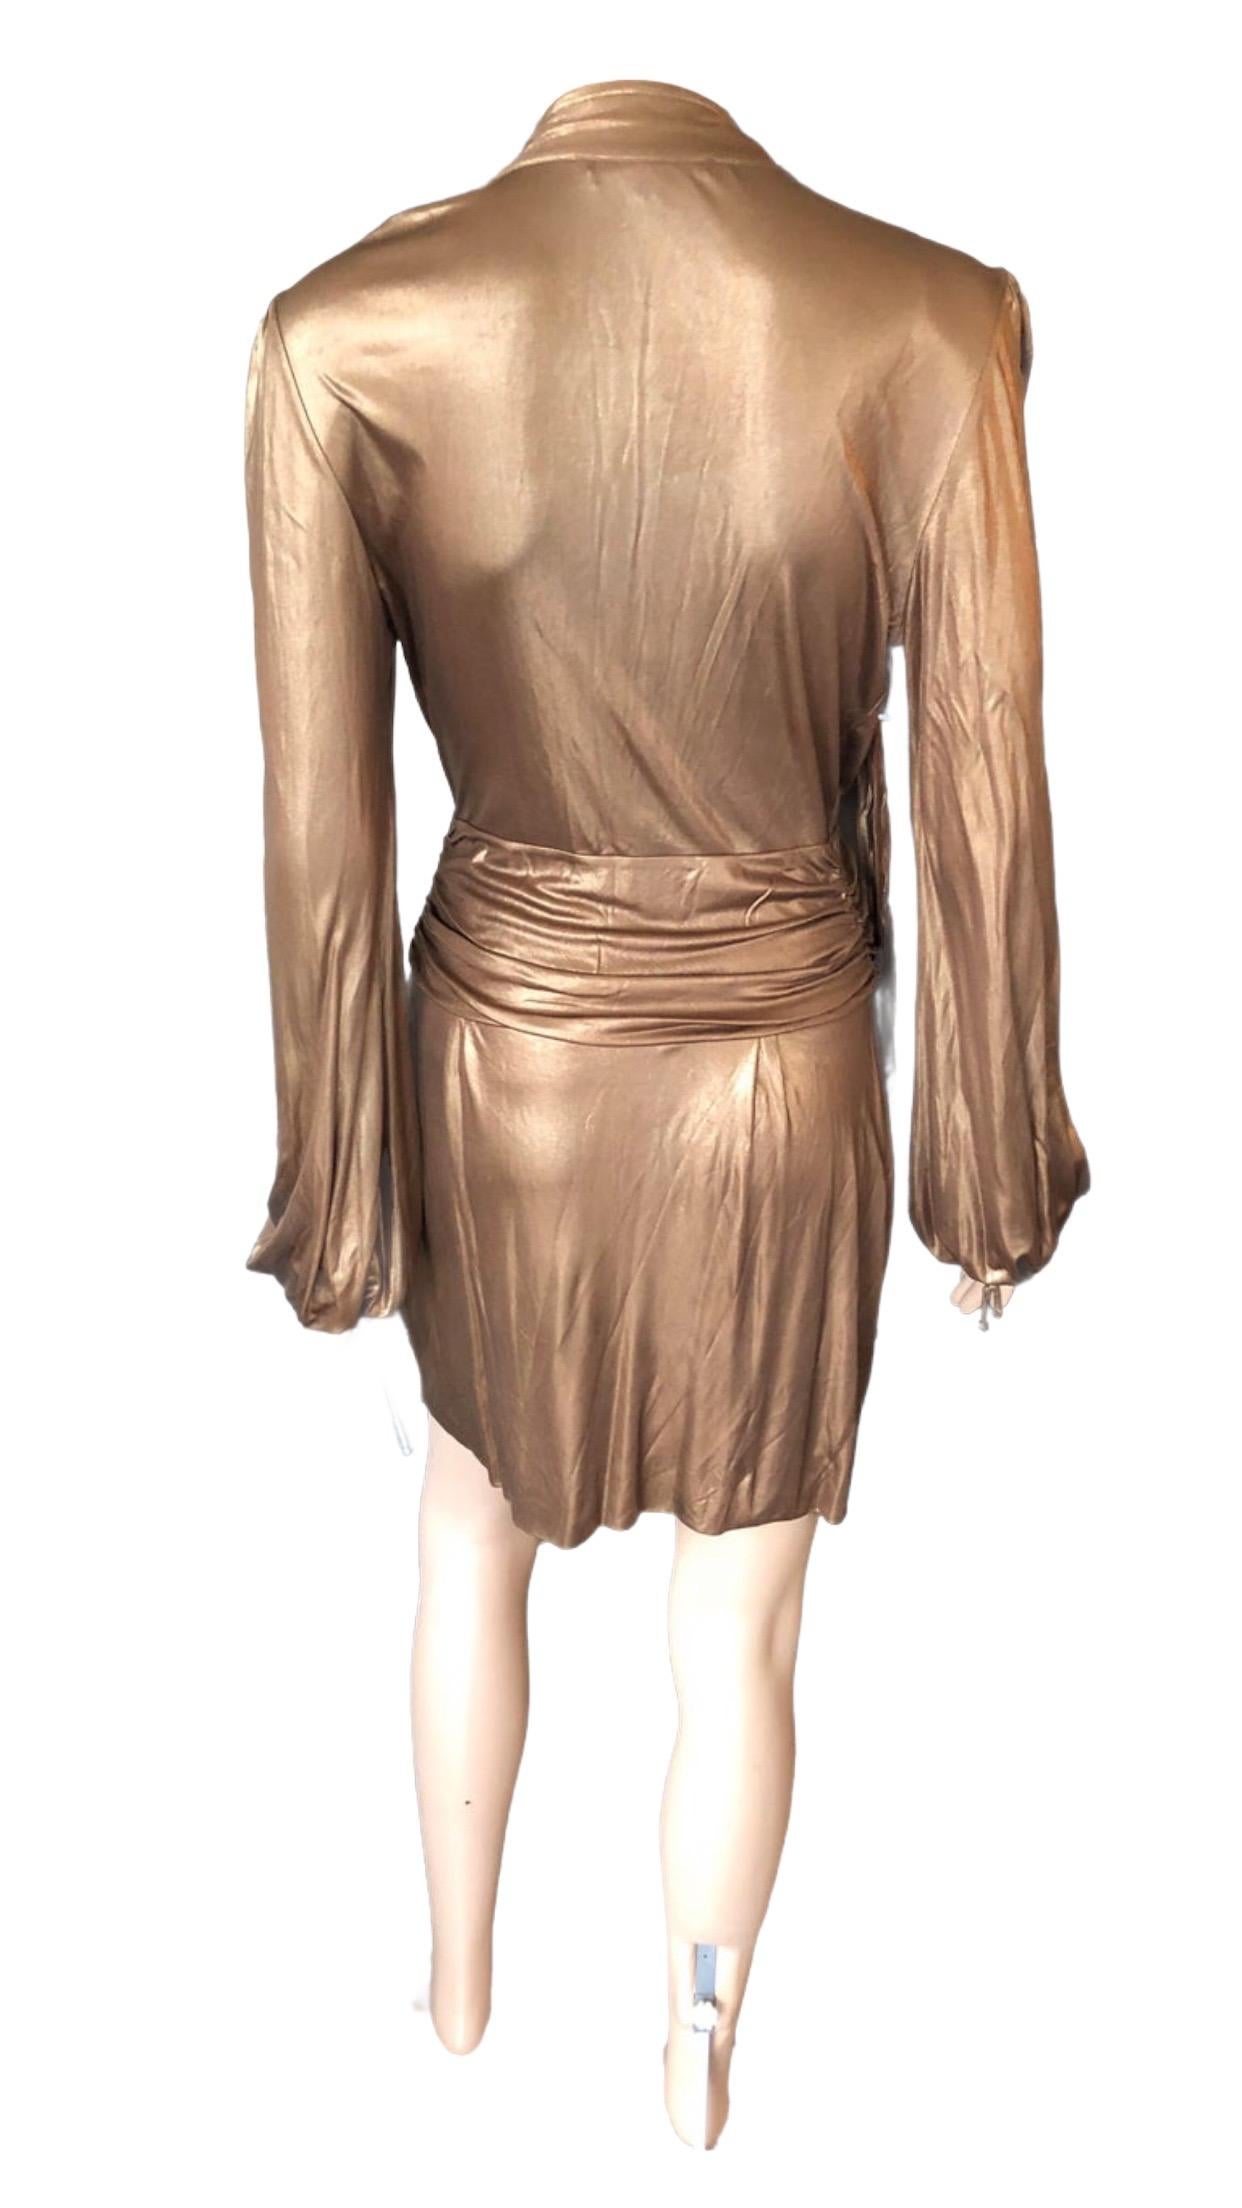 Gucci F/W 2006 Runway Plunging Neckline Gold Metallic Mini Dress 2